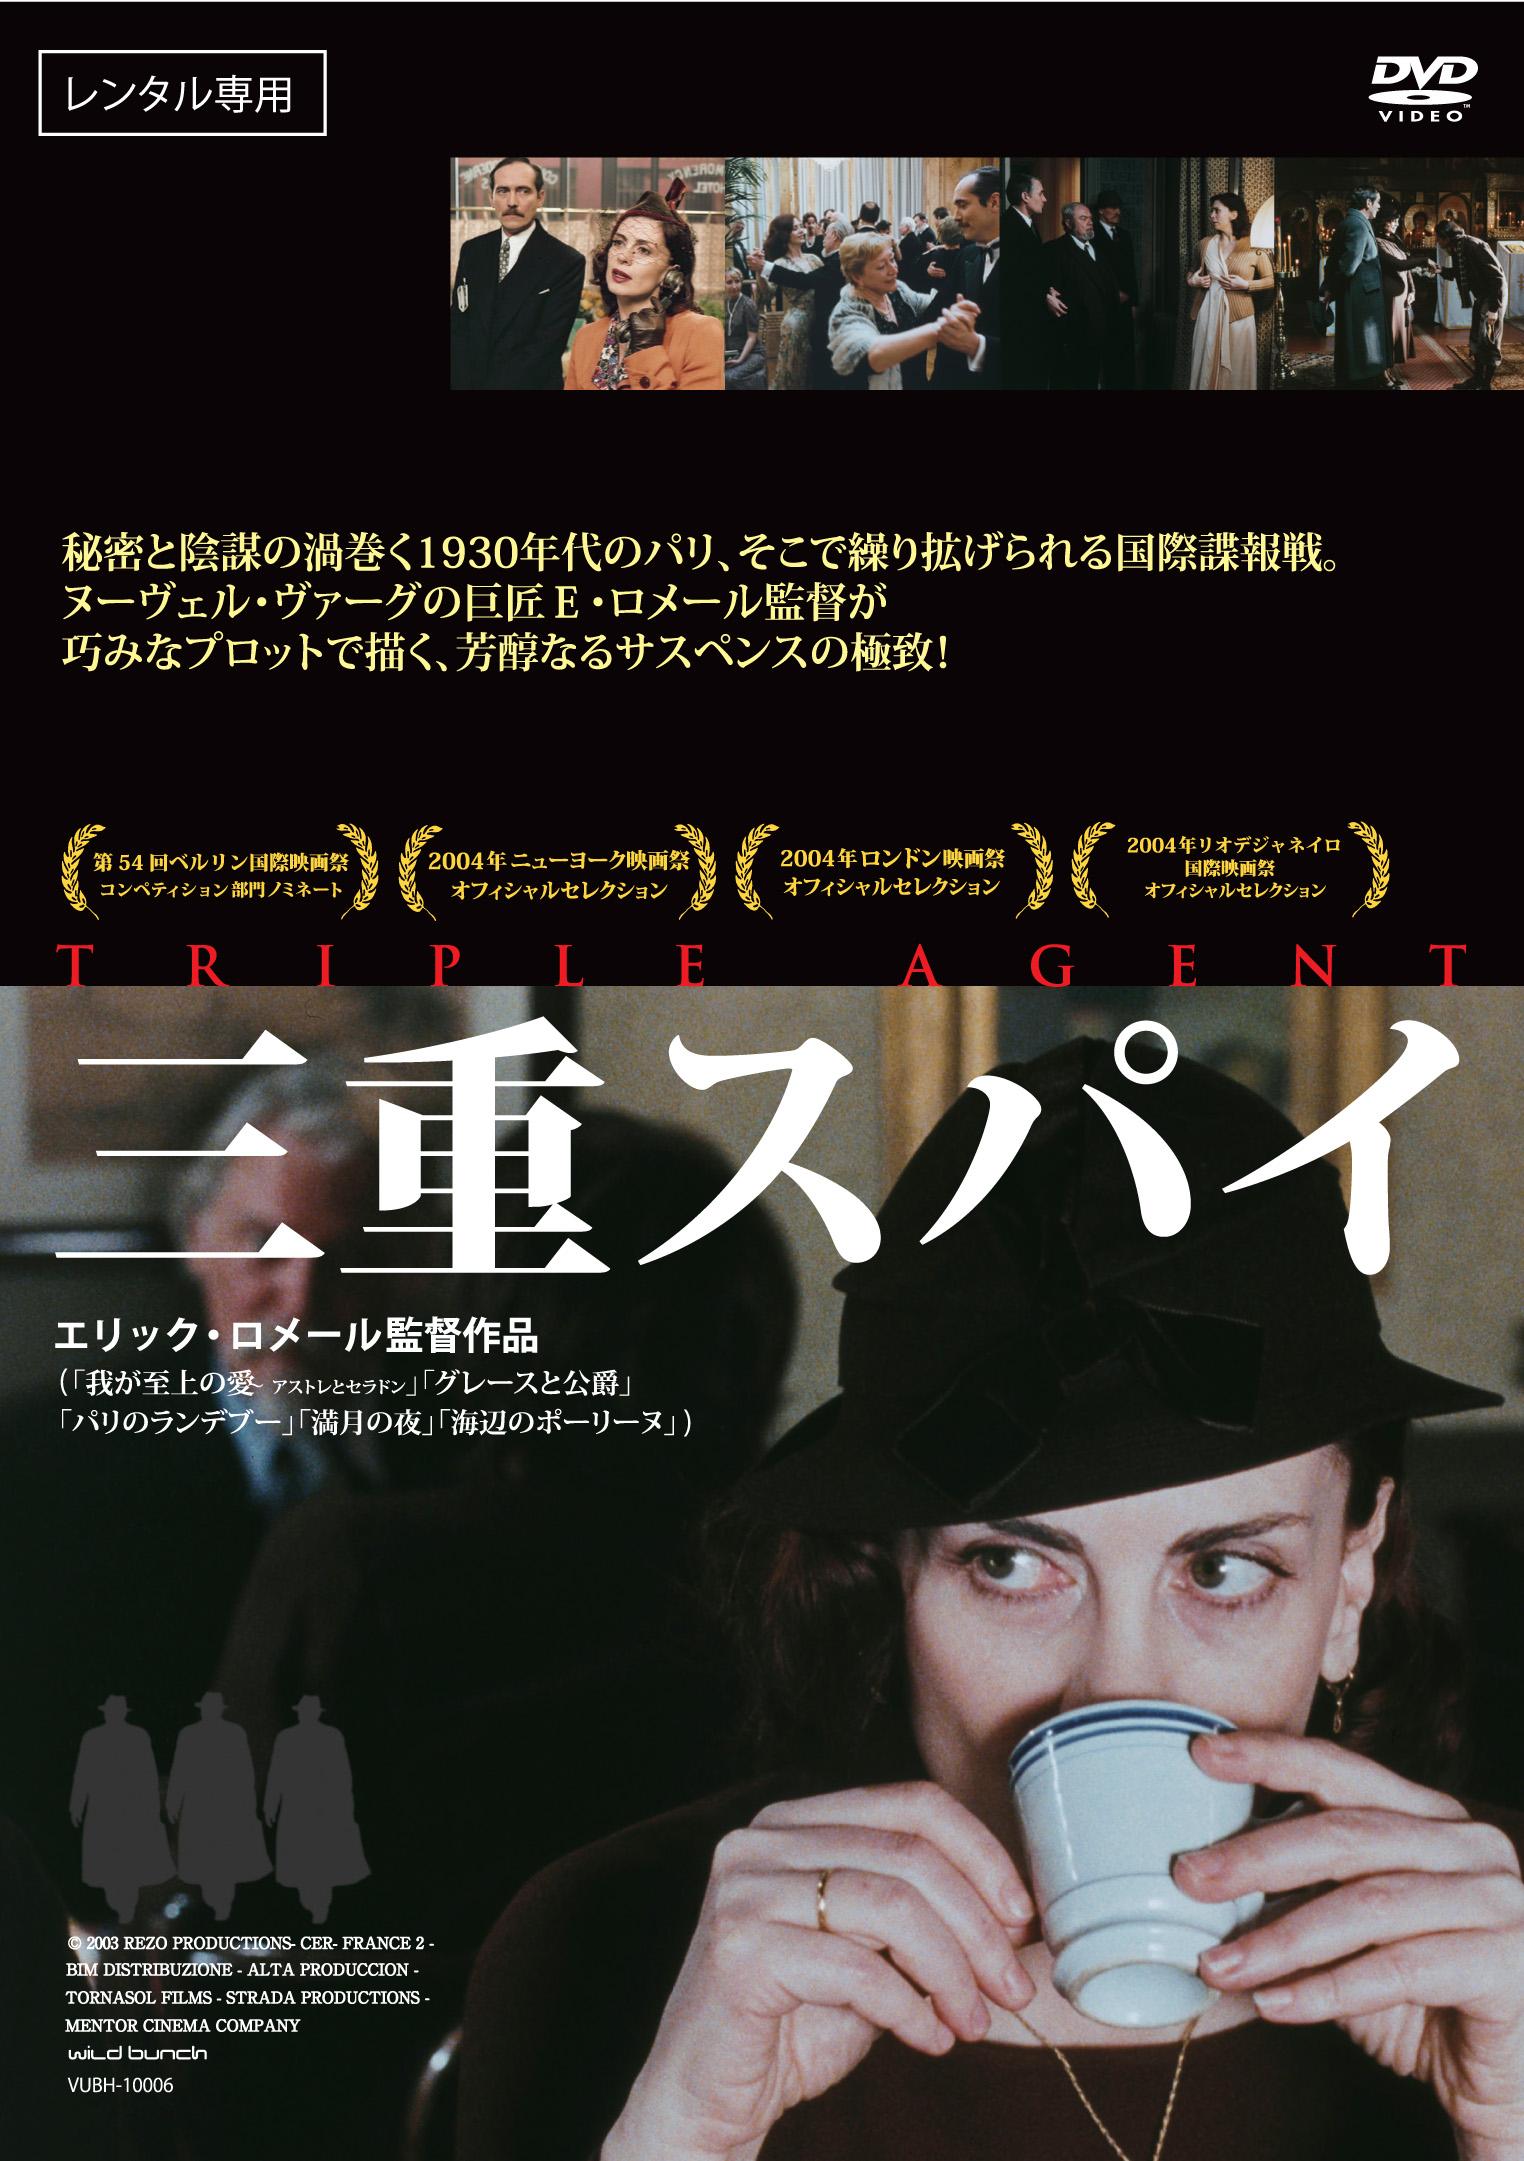 三重スパイ('03仏) - 洋画・外国映画